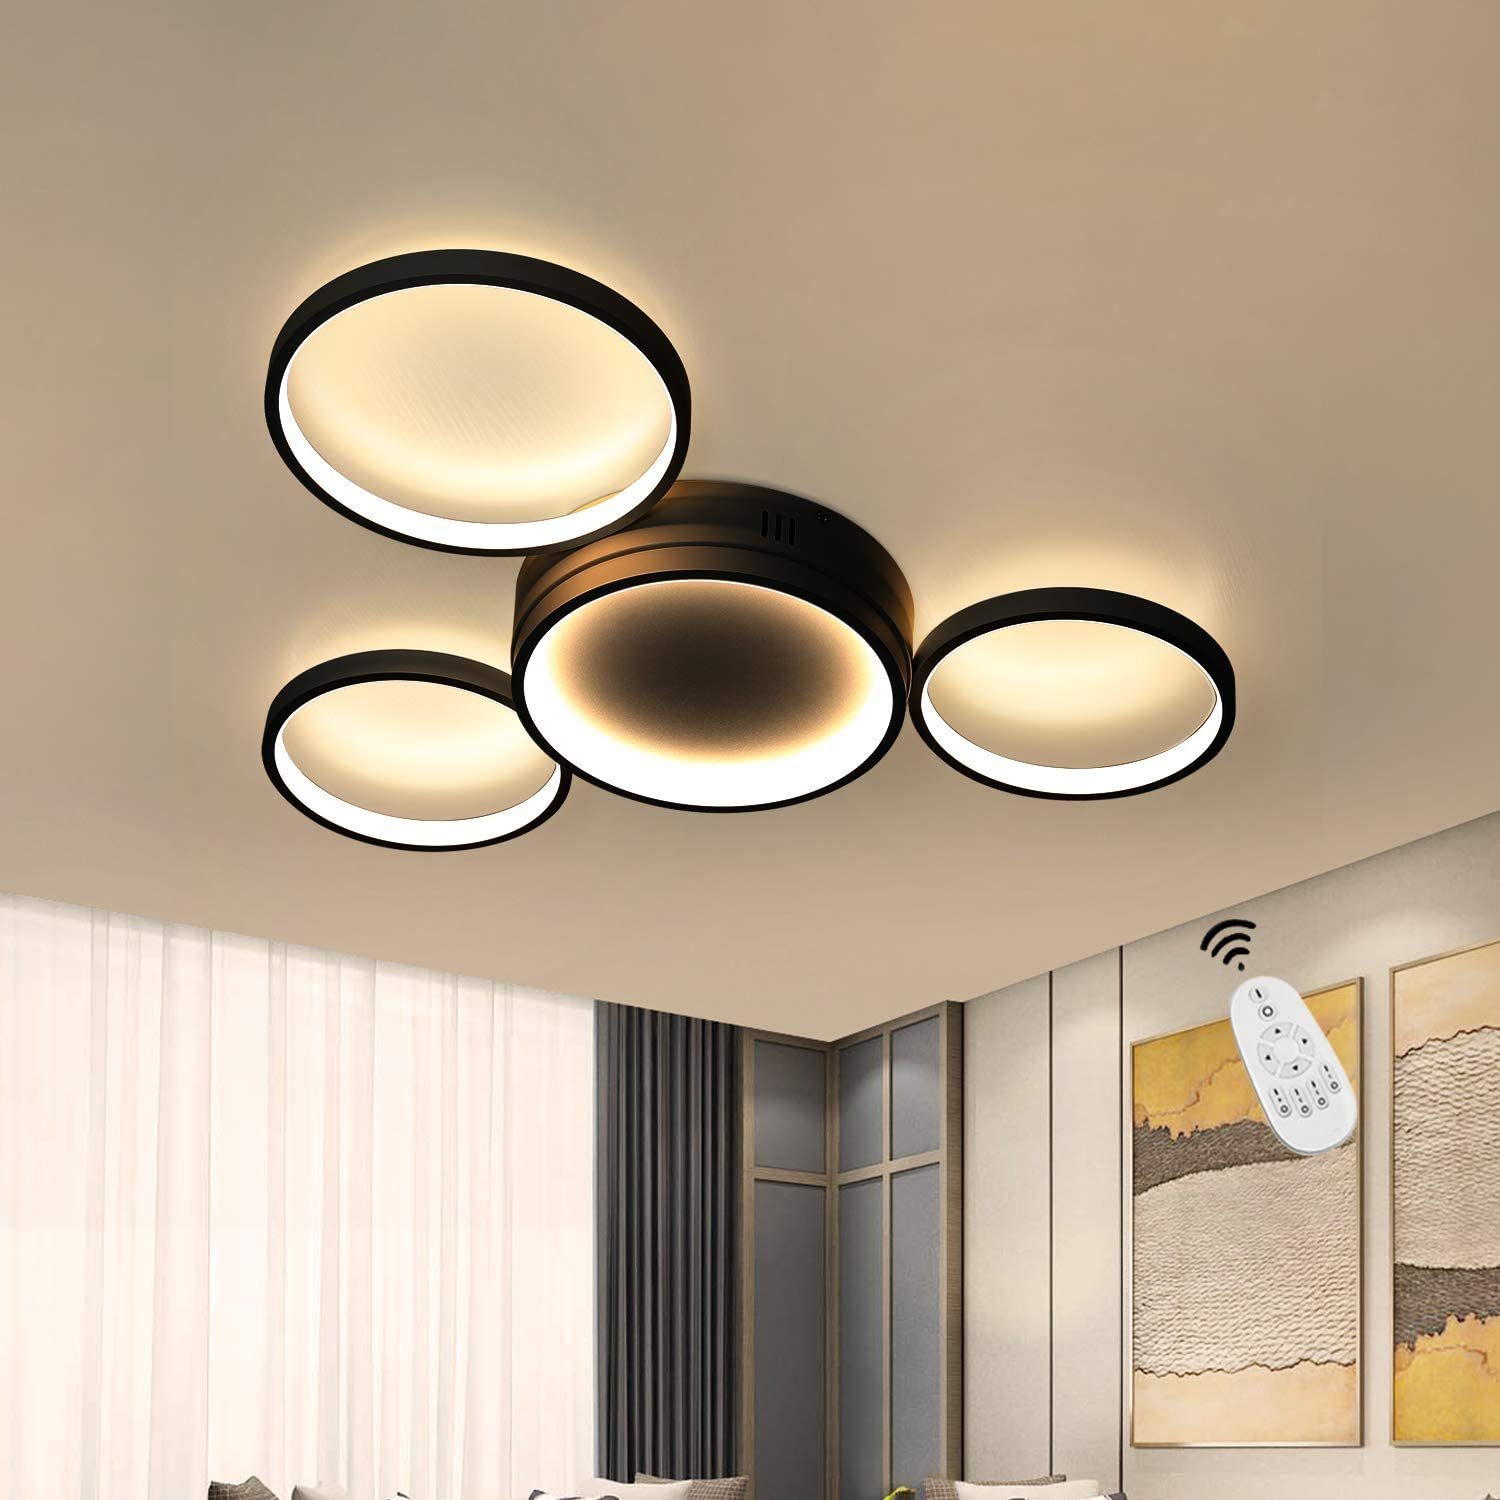 verstellbare Decken Lampen LED Flur Leuchten Design Wohn Schlaf Raum Beleuchtung 